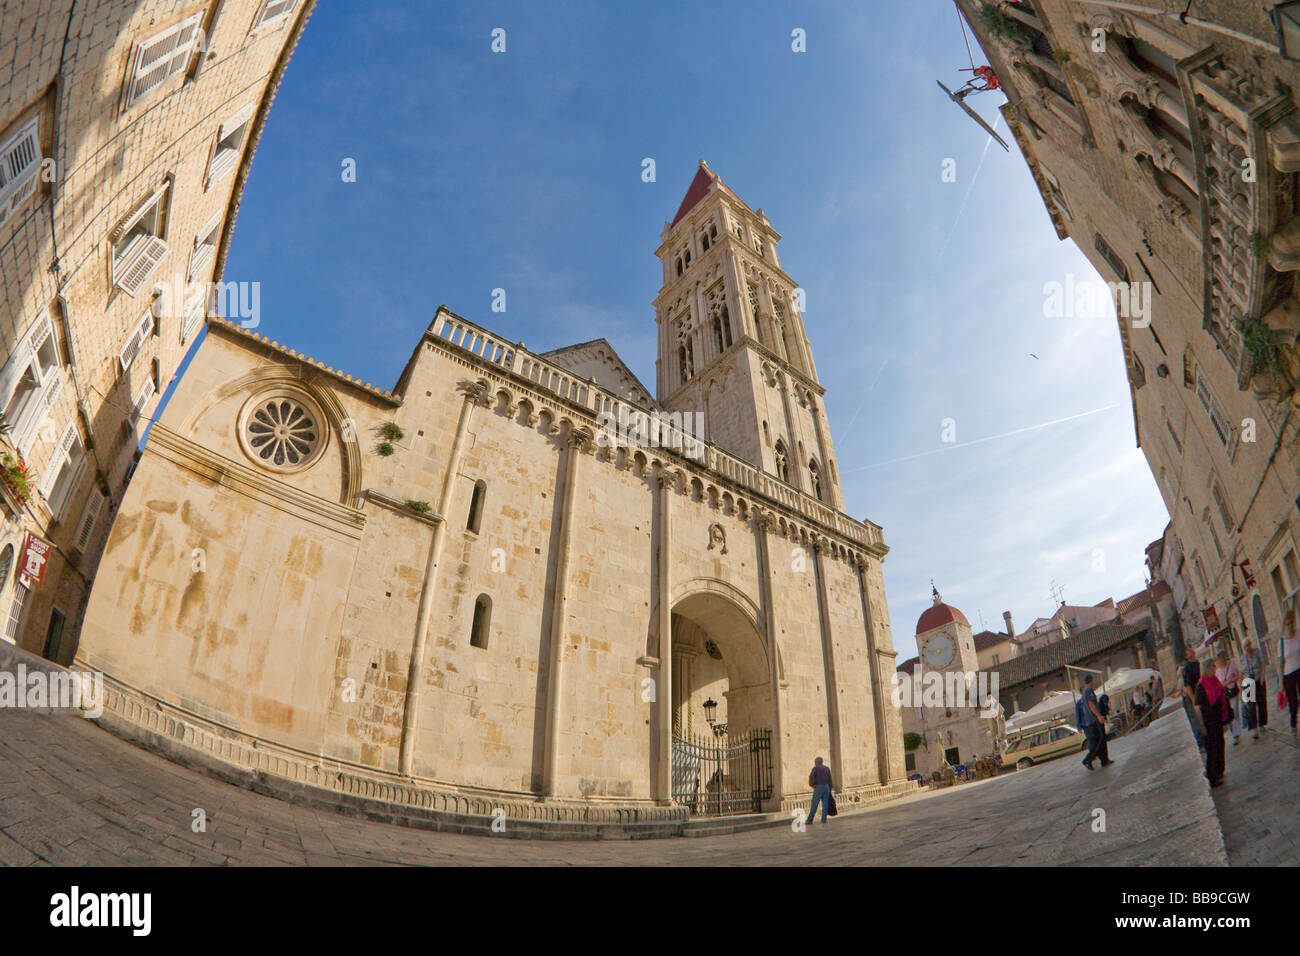 Cathédrale de St Laurent et de la tour de l'horloge de la Place de Jean Paul II de la côte dalmate Croatie Dalmatie Trogir Banque D'Images